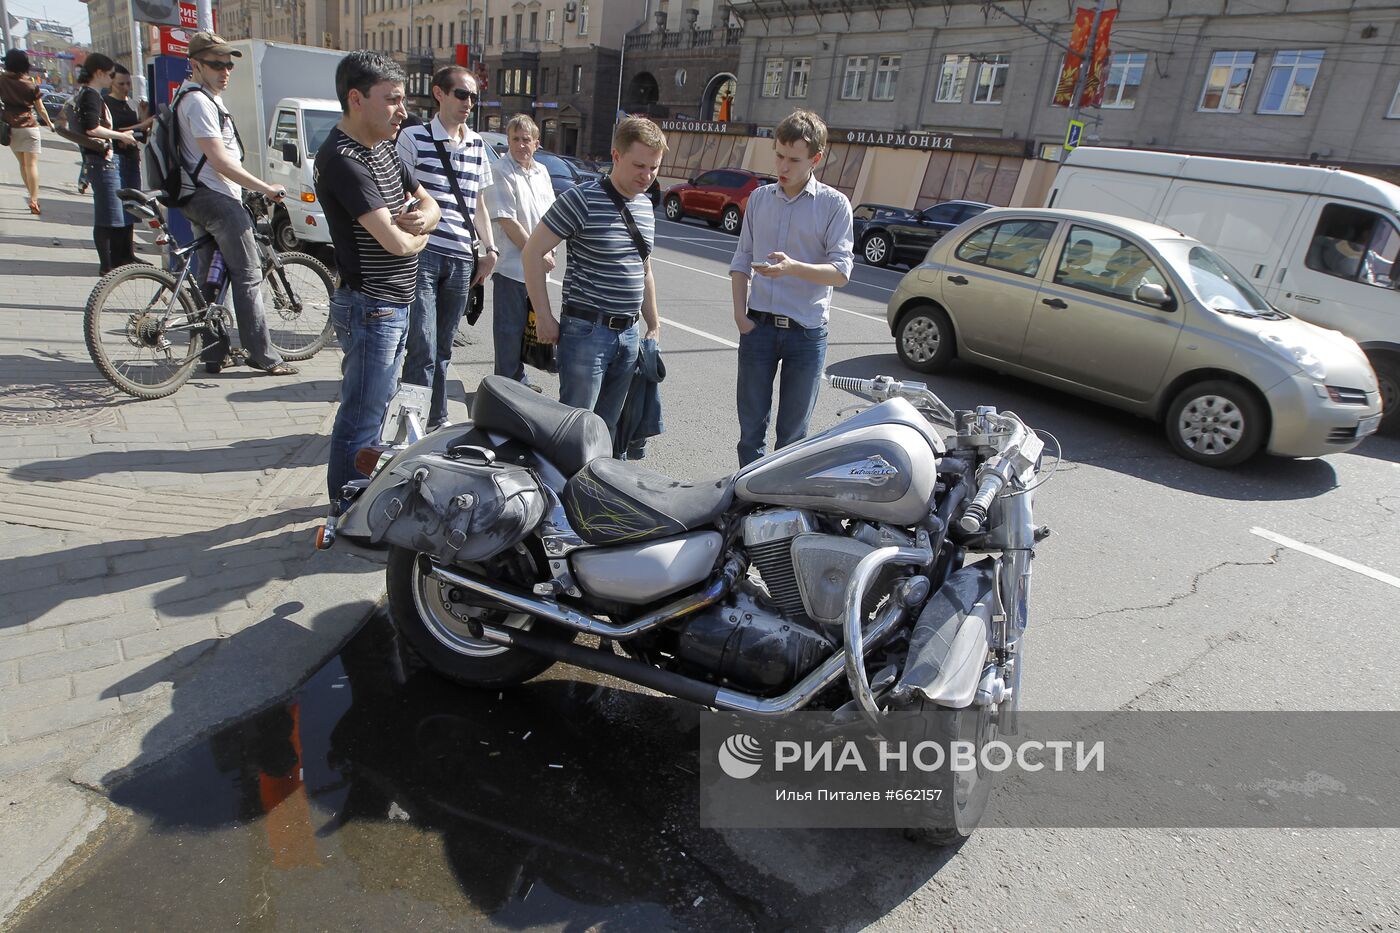 ДТП с участие мотоцикла на улице Тверская